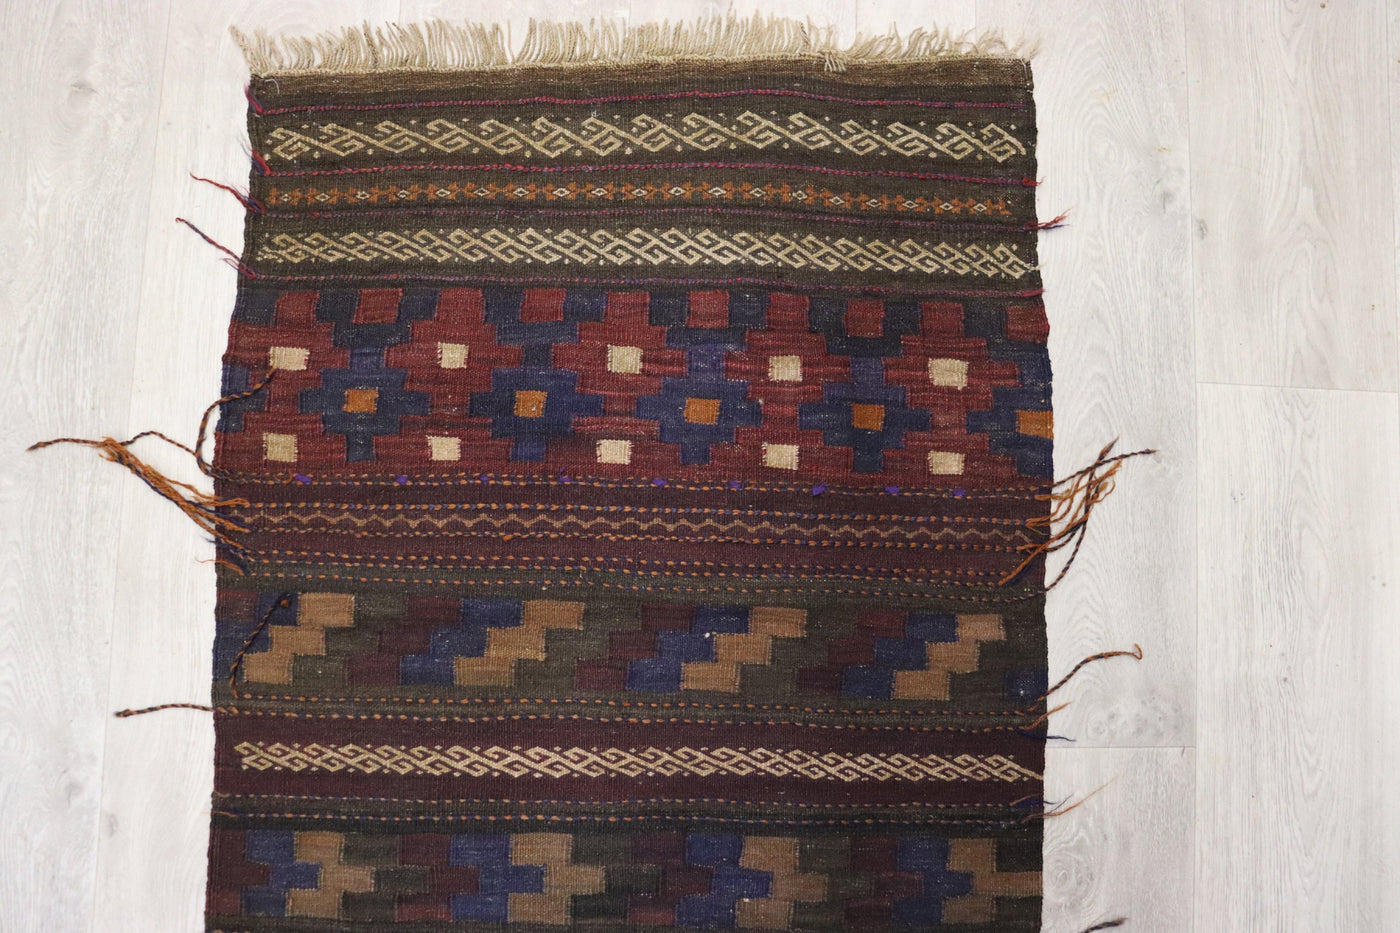 198x70 cm Antik orient handgewebte Teppich Nomaden Balouch sumakh kelim afghan Beloch Flur Läufer kilim Nr- 22D Teppiche Orientsbazar   